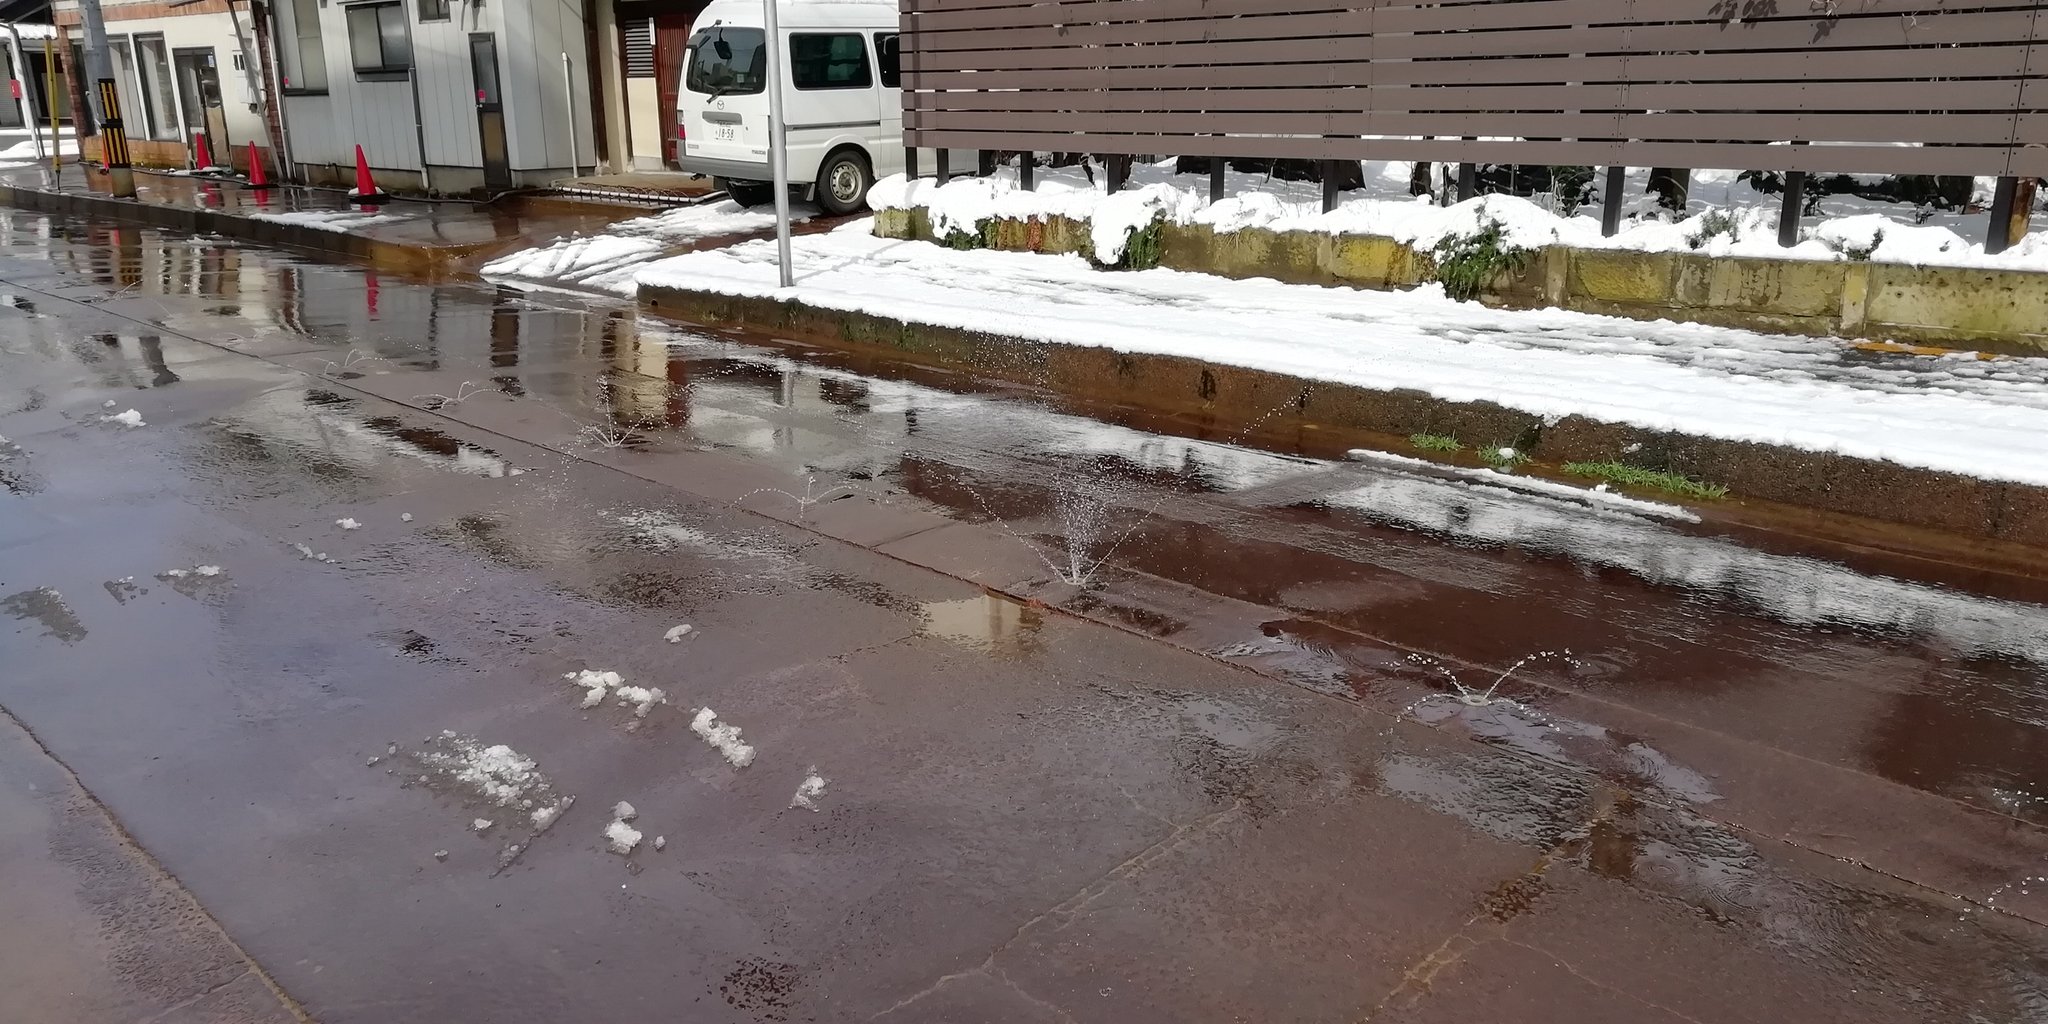 あきら 長岡駅の周辺を歩く 道路から雪を溶かすための水が吹き出る そのおかげで水溜まりが多い だから やっぱり長ぐつ履いといてよかった 新潟県長岡市 道路から水が吹き出る T Co Xvpgxyrsjx Twitter